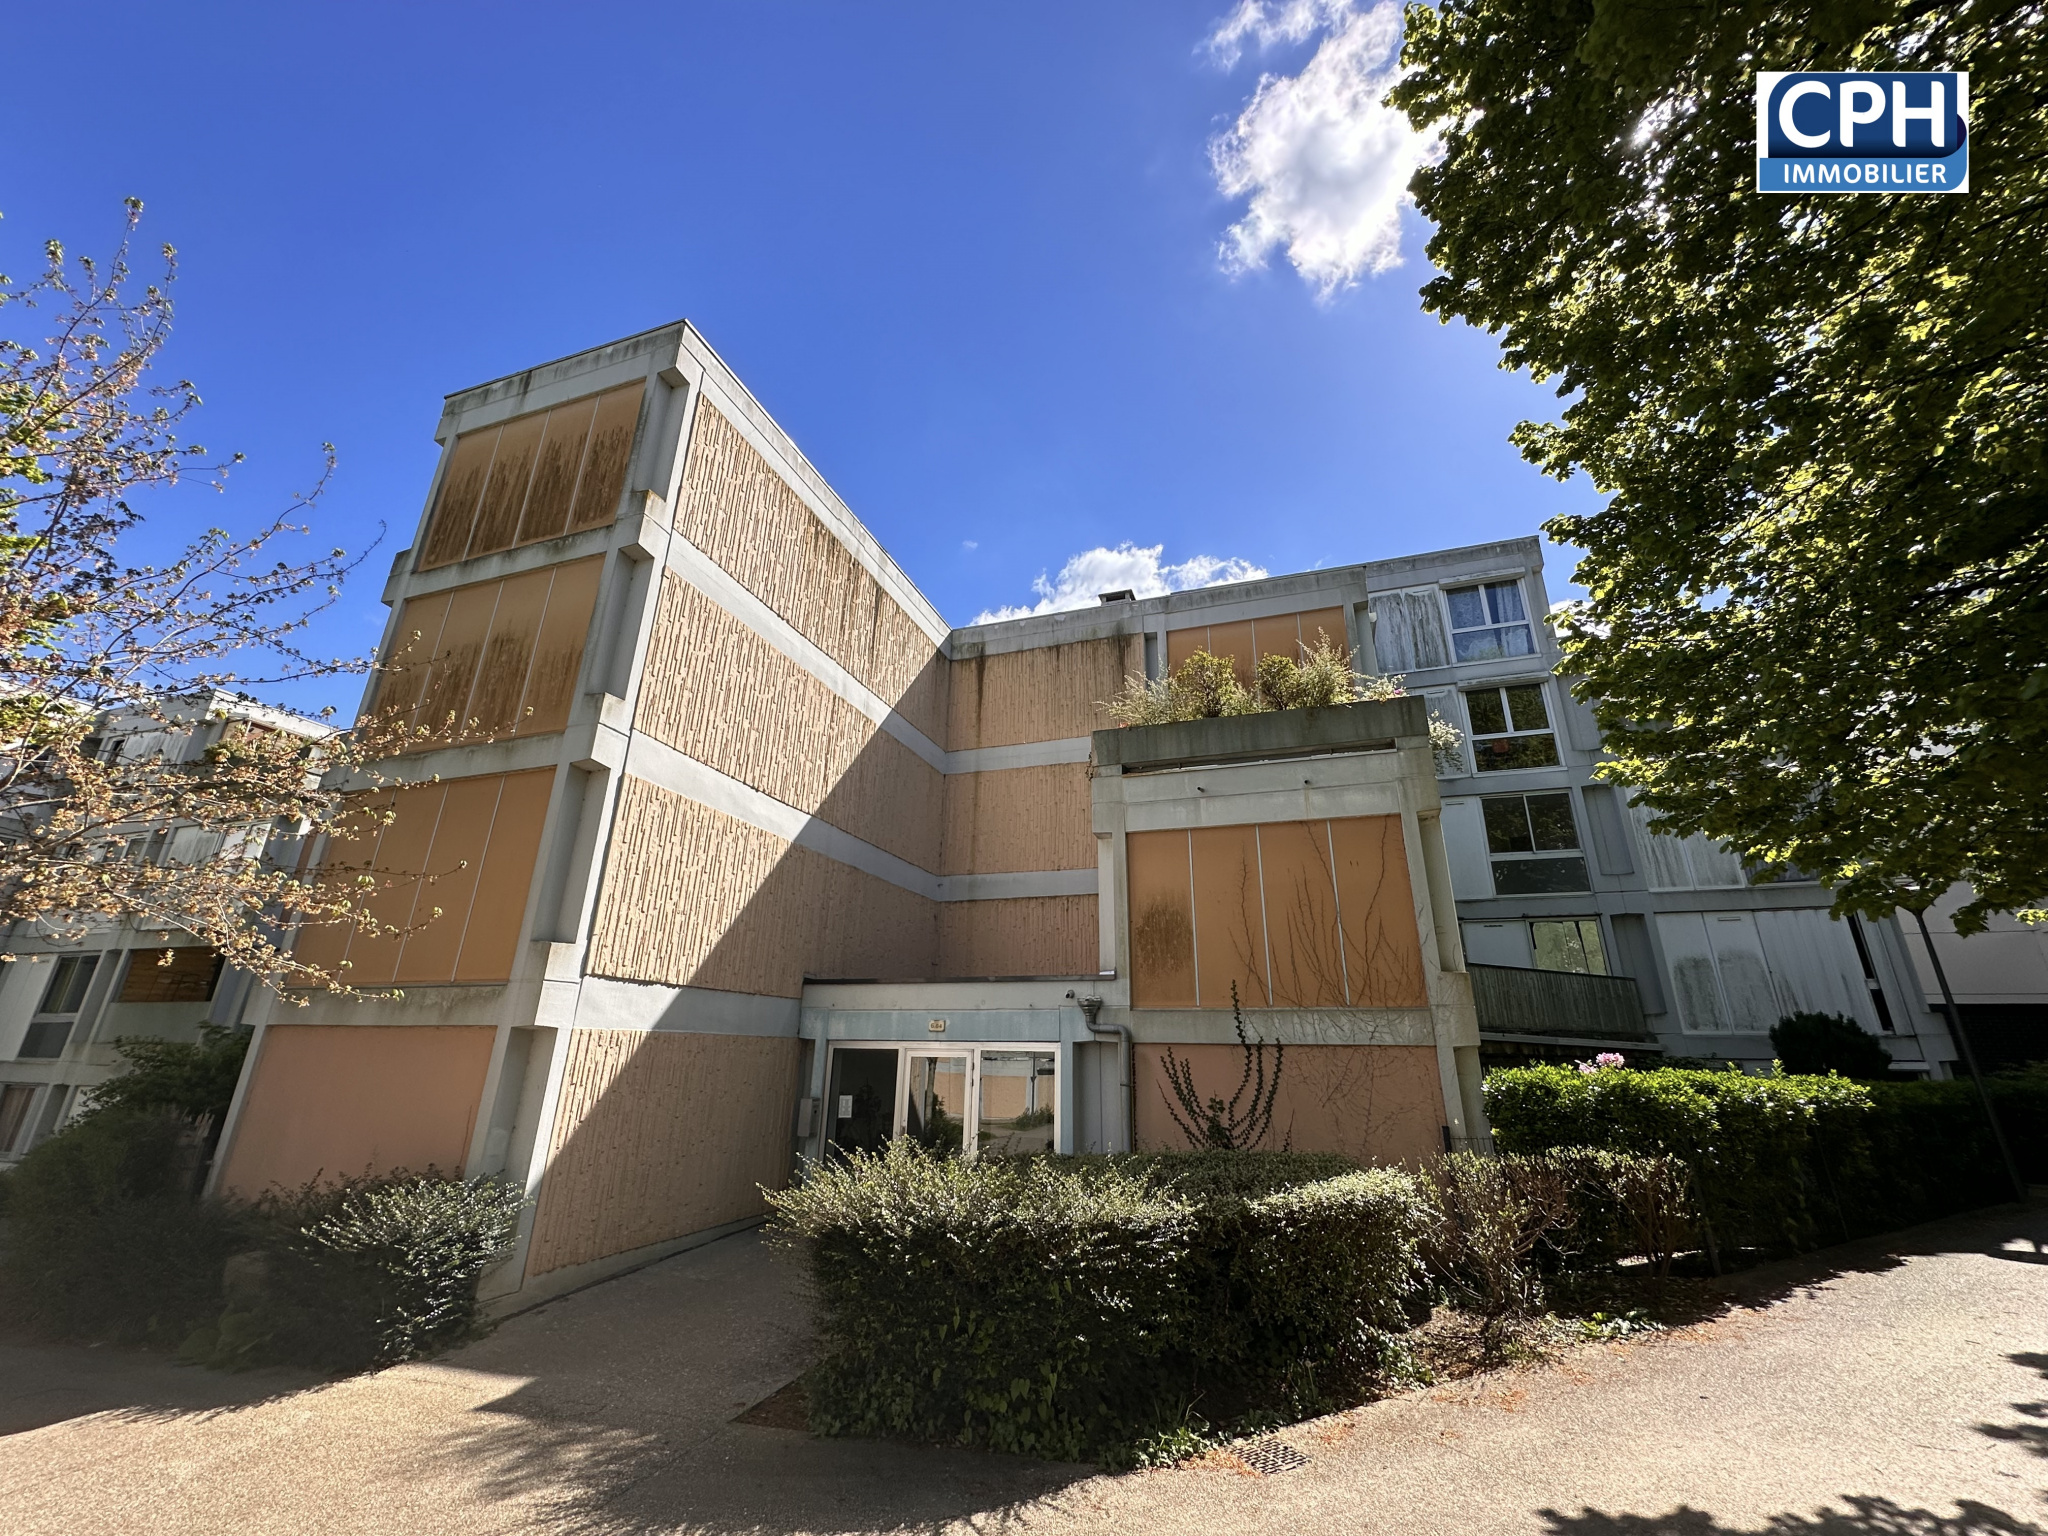 Vente Appartement 81m² 4 Pièces à Hérouville-Saint-Clair (14200) - Cph Immobilier